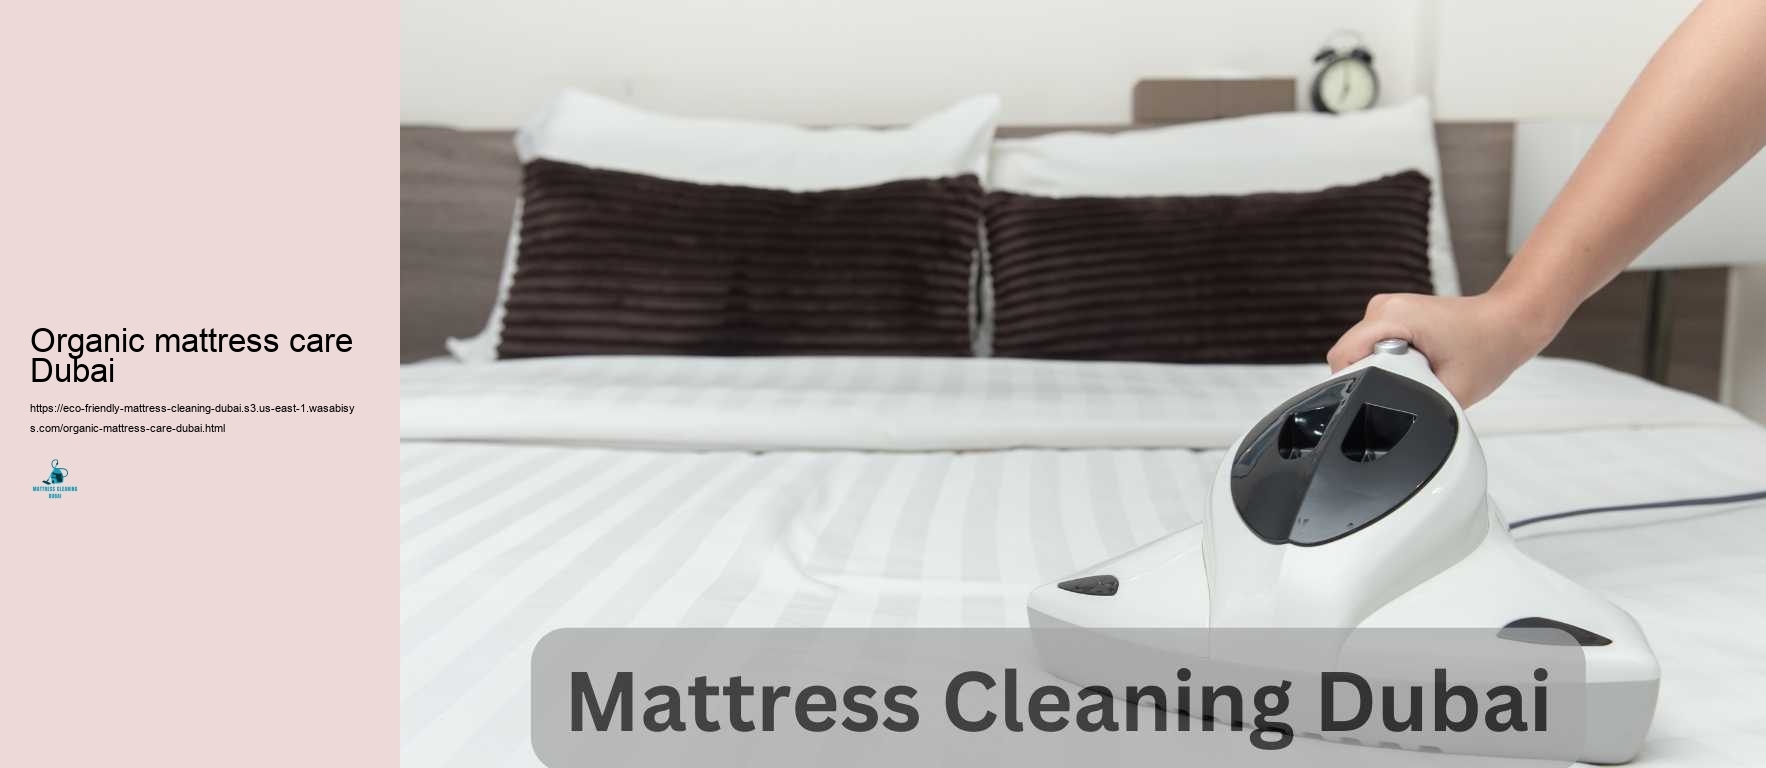 Organic mattress care Dubai